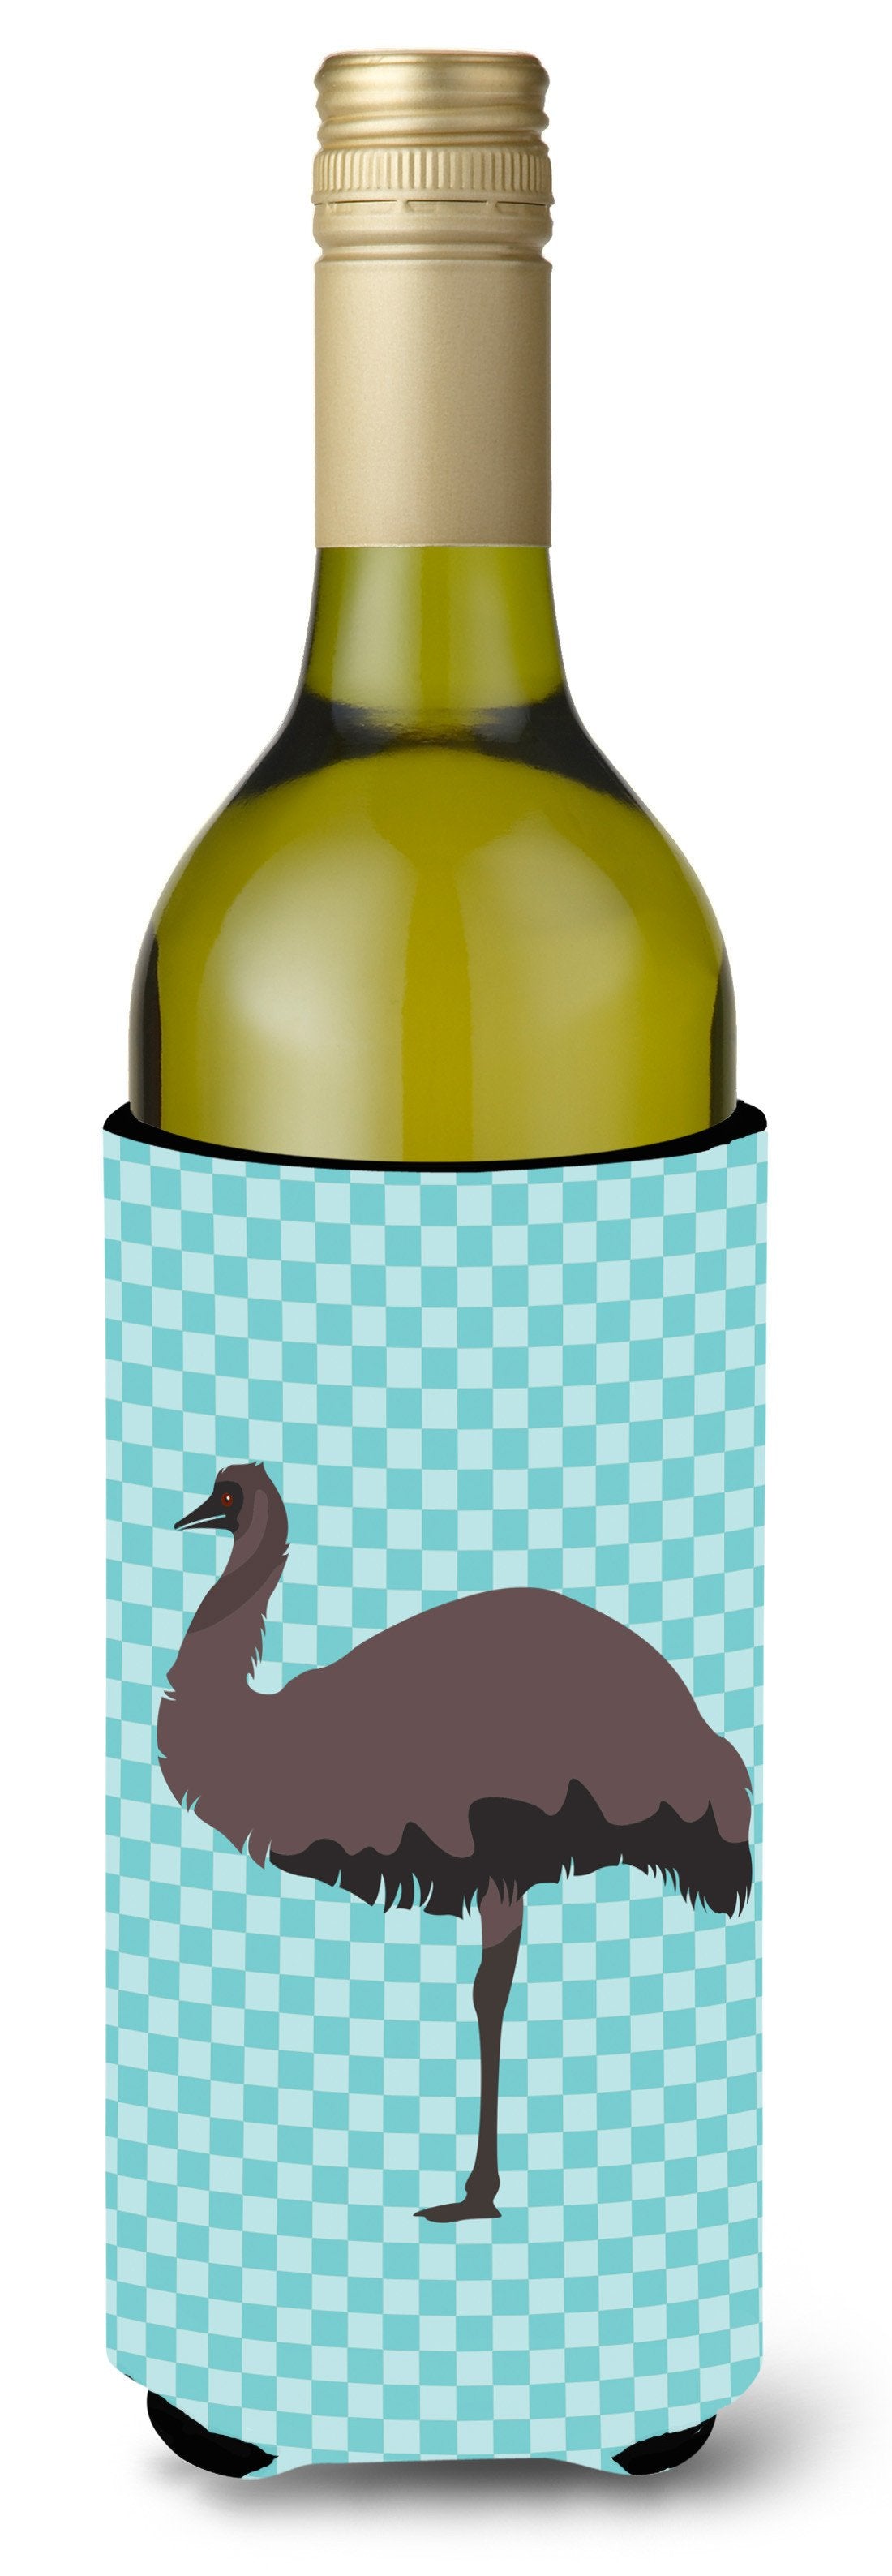 Emu Blue Check Wine Bottle Beverge Insulator Hugger BB8096LITERK by Caroline's Treasures